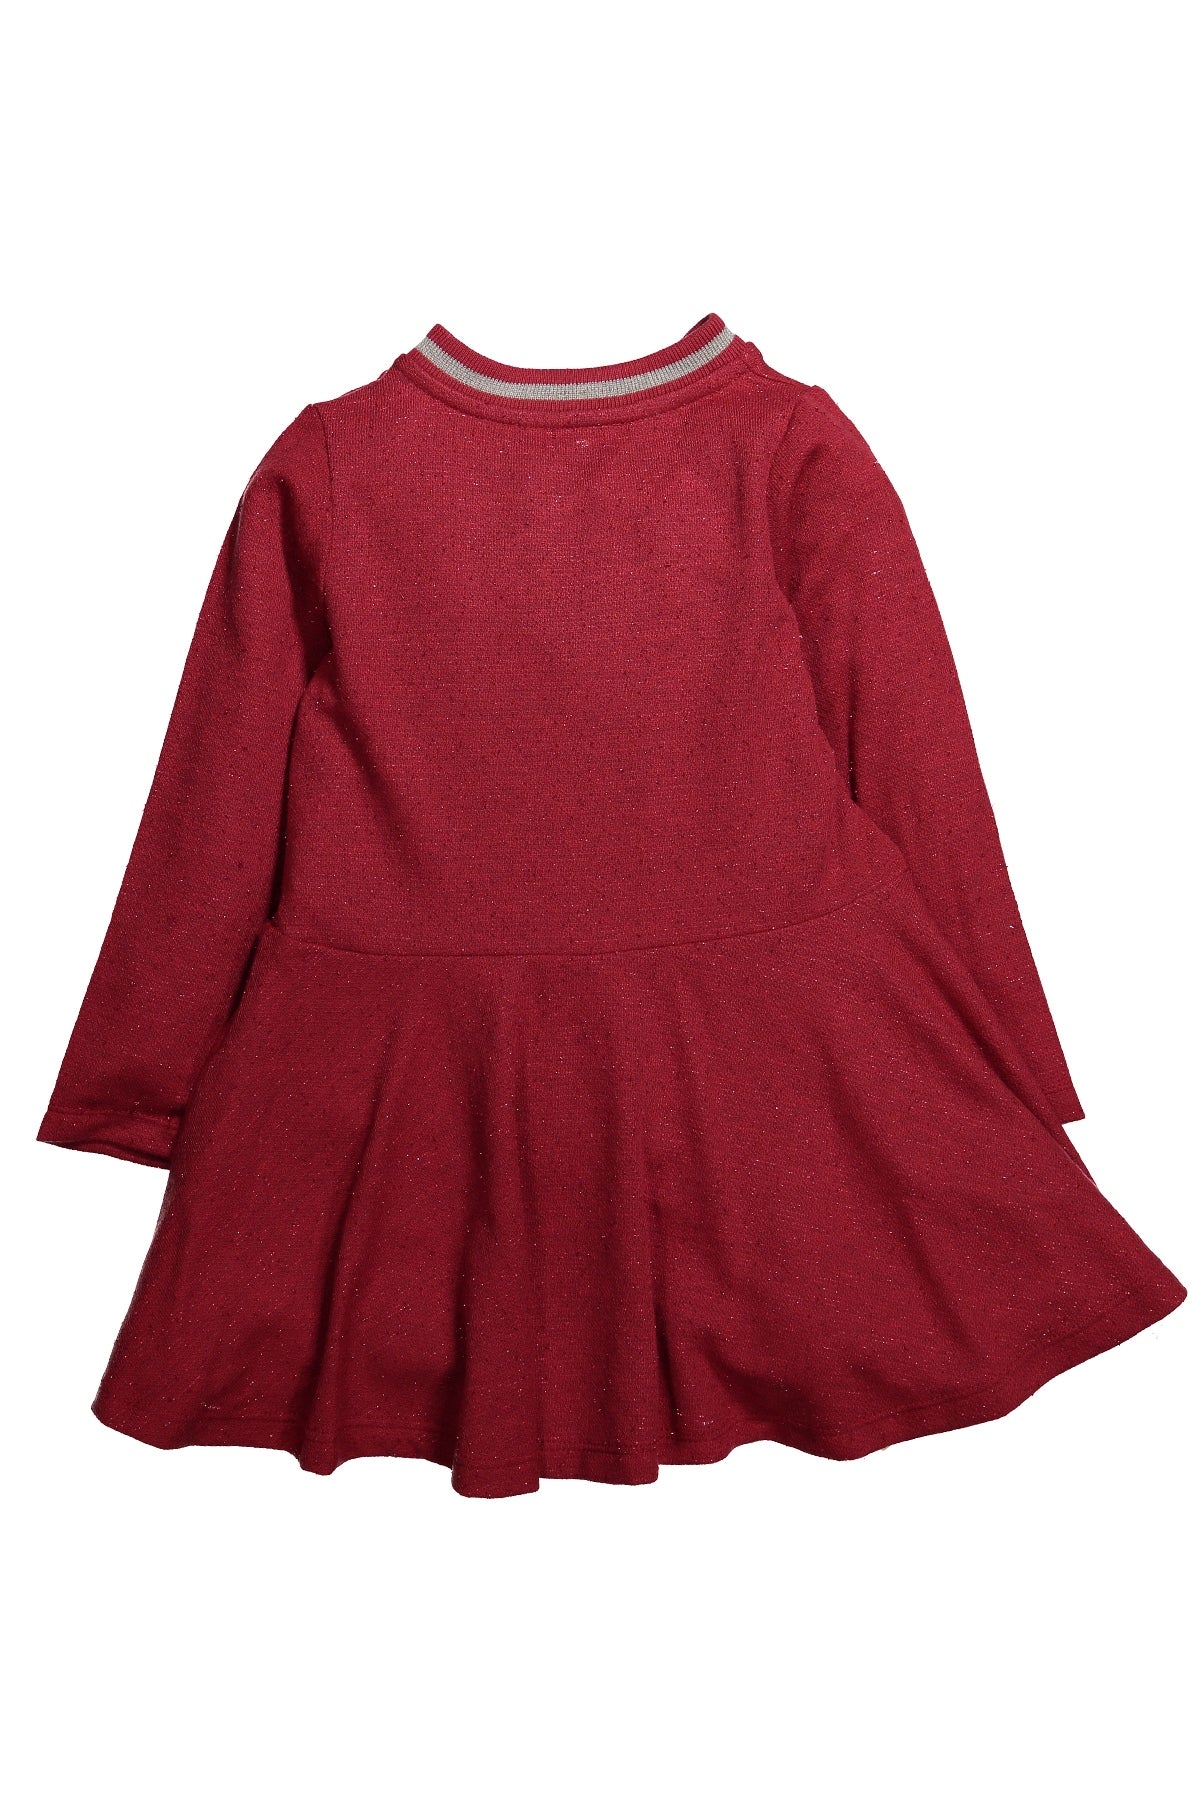 Kız Bebek Ribanalı Simli Kloş Elbise (12ay-4yaş)-2